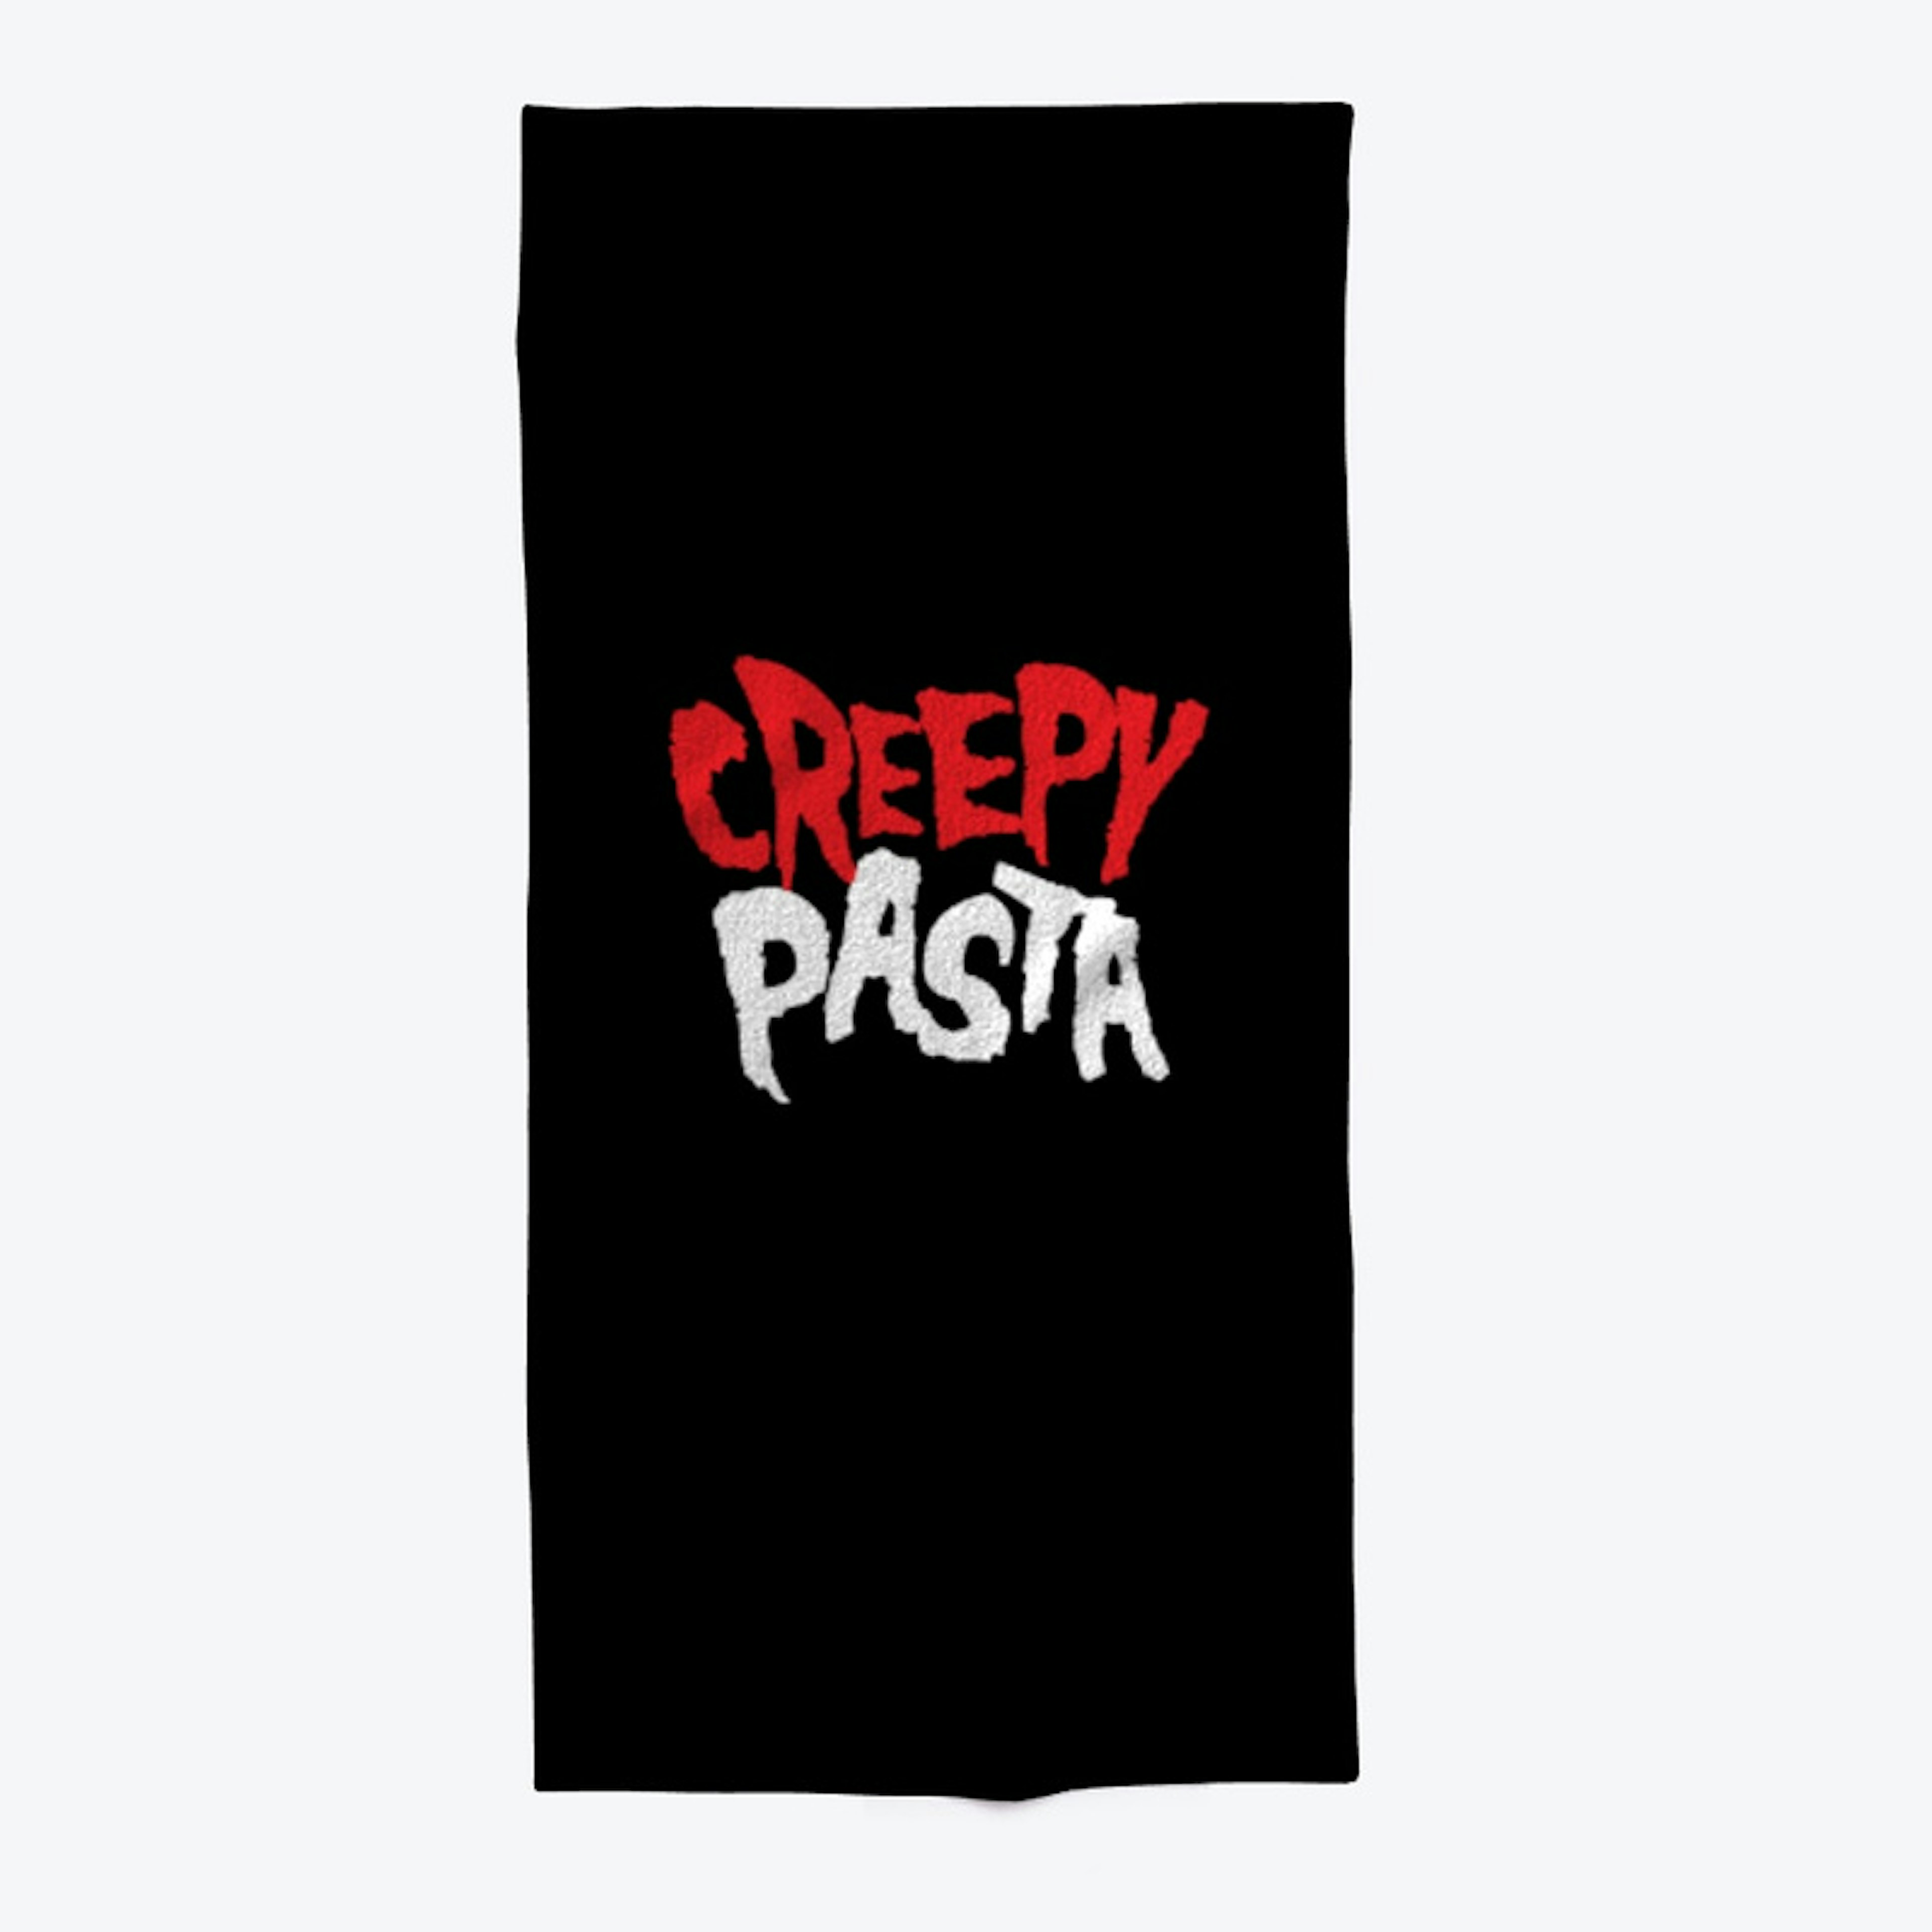 Creepypasta.com Collection